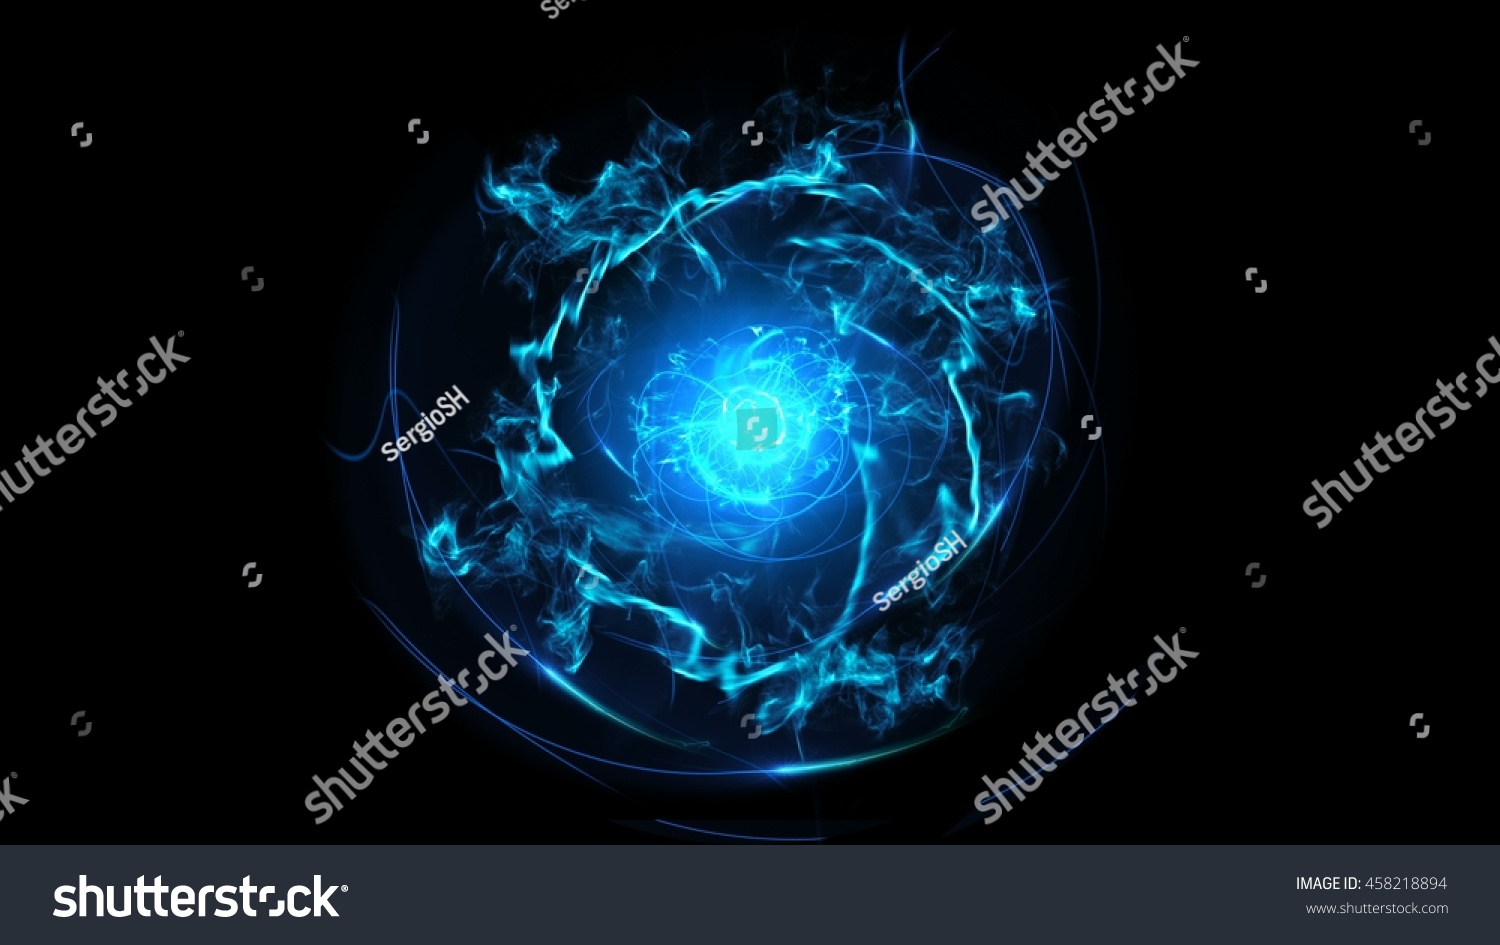 青い抽象的な流れるエネルギー電気 球の線のねじれ 緩和曲線の形 衝撃波が中心から発する 黒い背景に球の形をしたグローライン上4k解像度 のイラスト素材